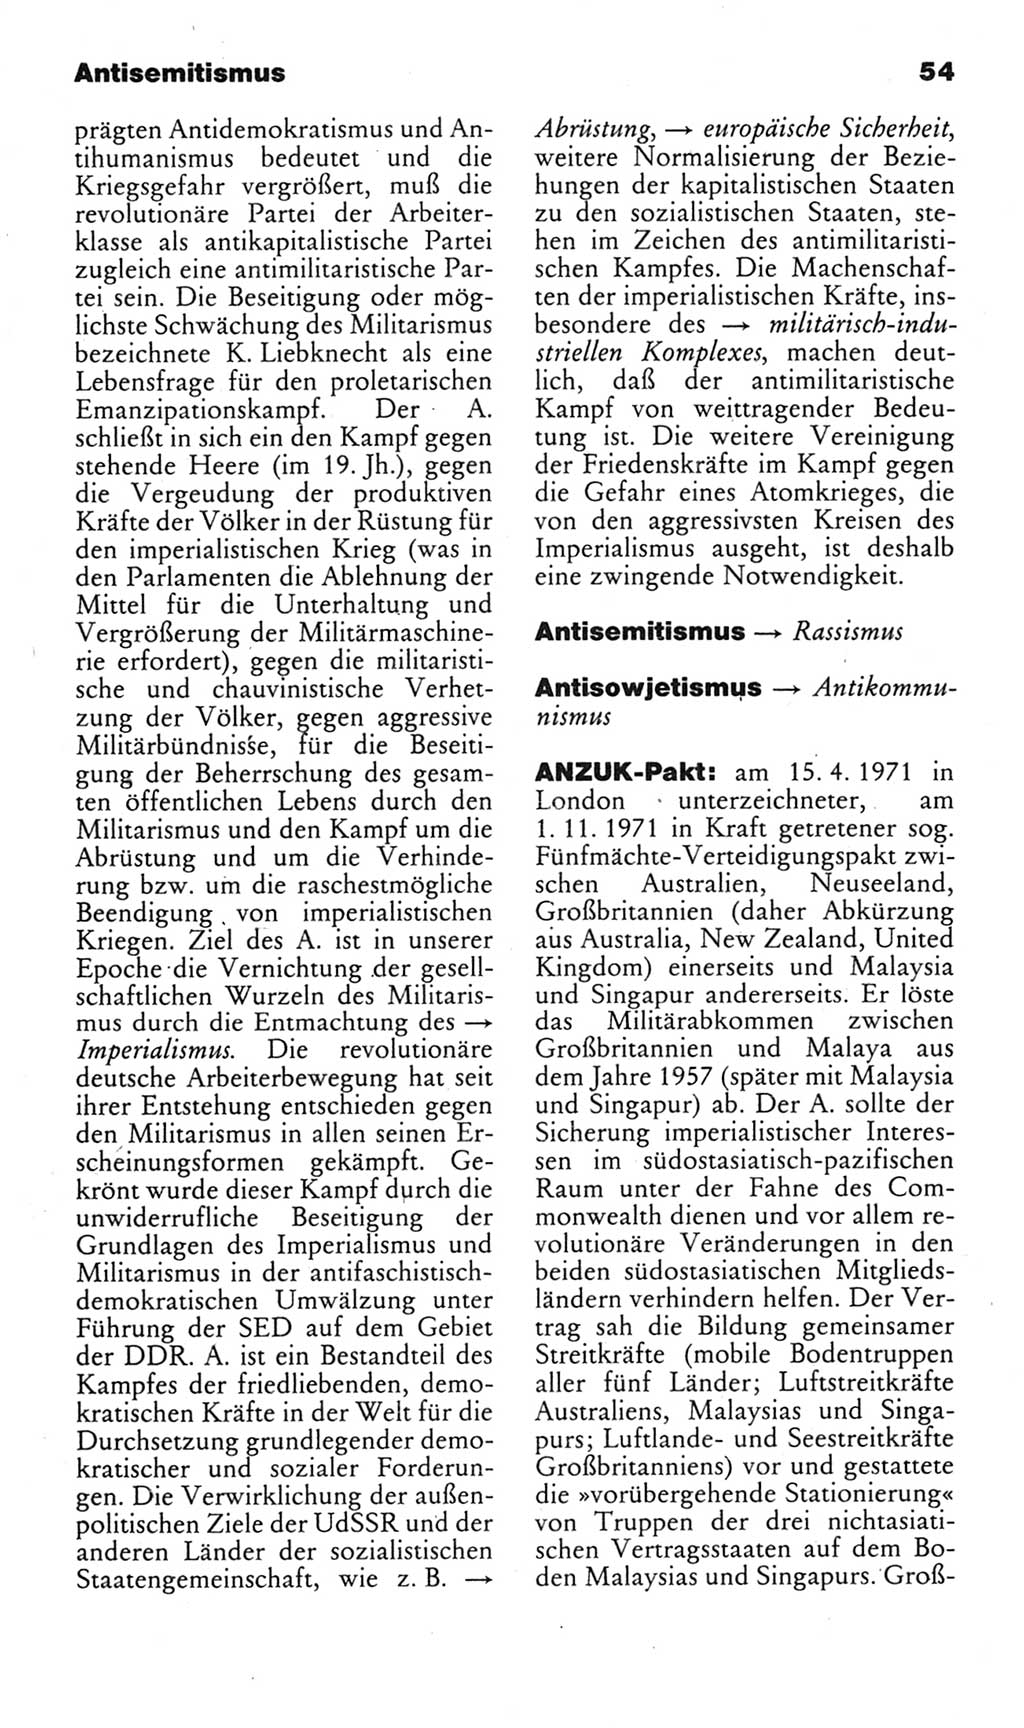 Kleines politisches Wörterbuch [Deutsche Demokratische Republik (DDR)] 1983, Seite 54 (Kl. pol. Wb. DDR 1983, S. 54)